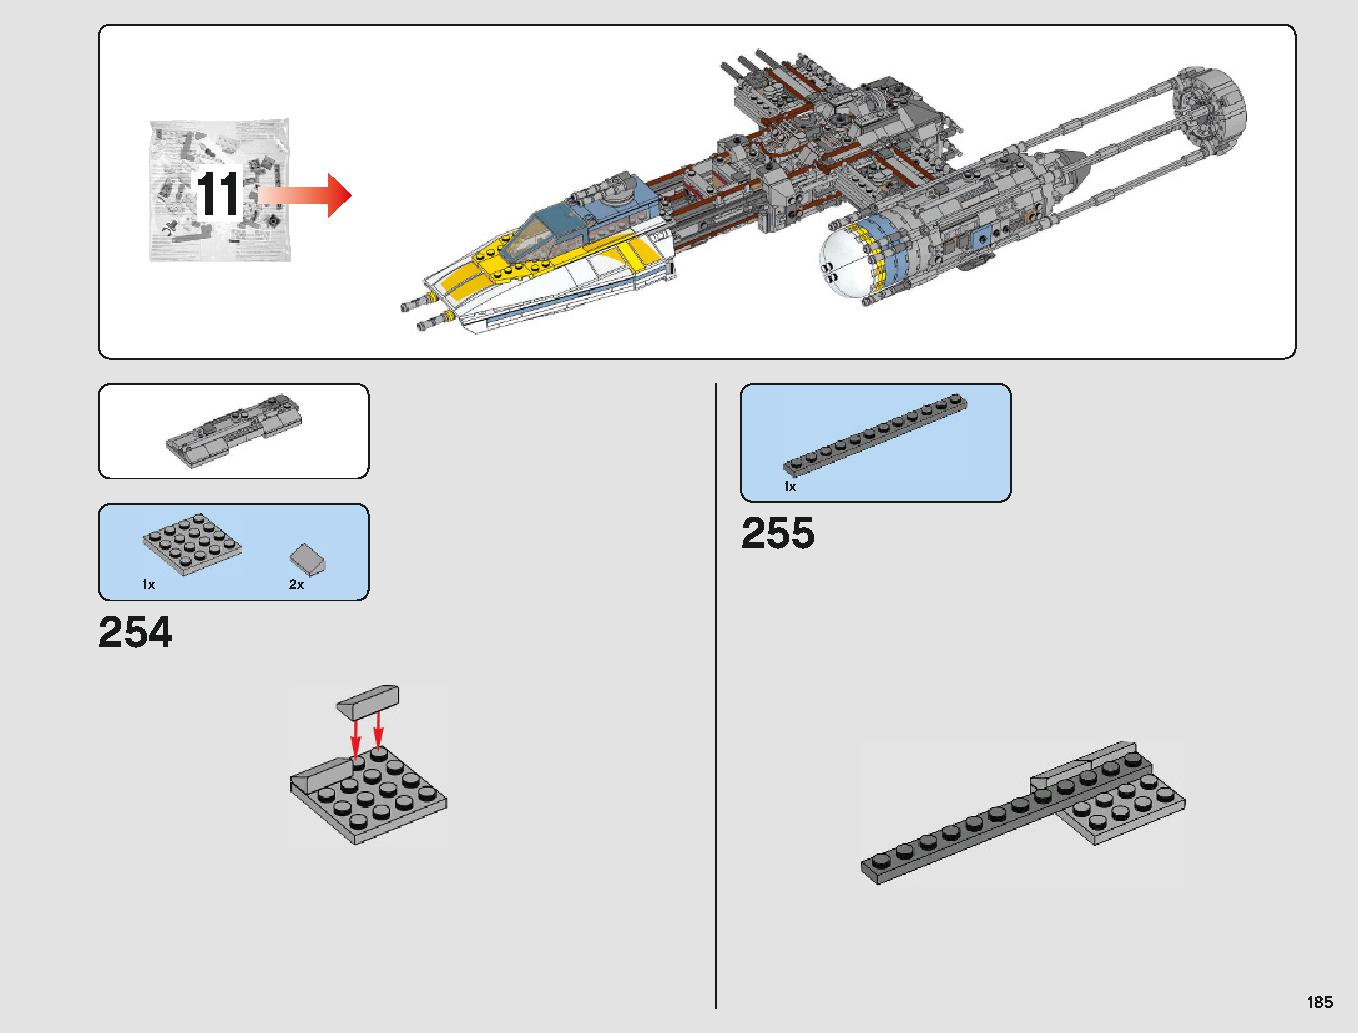 Yウィング・スターファイター™ 75181 レゴの商品情報 レゴの説明書・組立方法 185 page